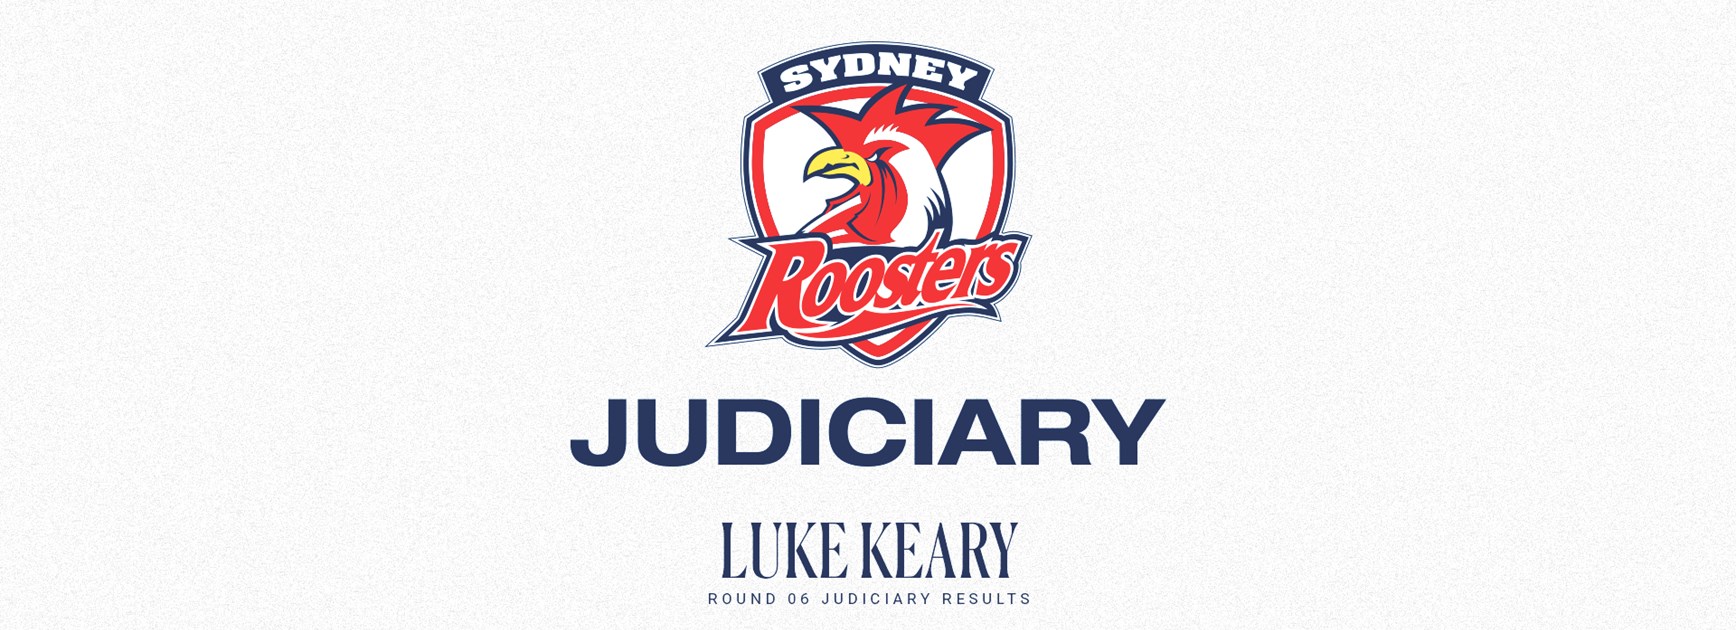 NRL Round 6 Judiciary Update: Luke Keary